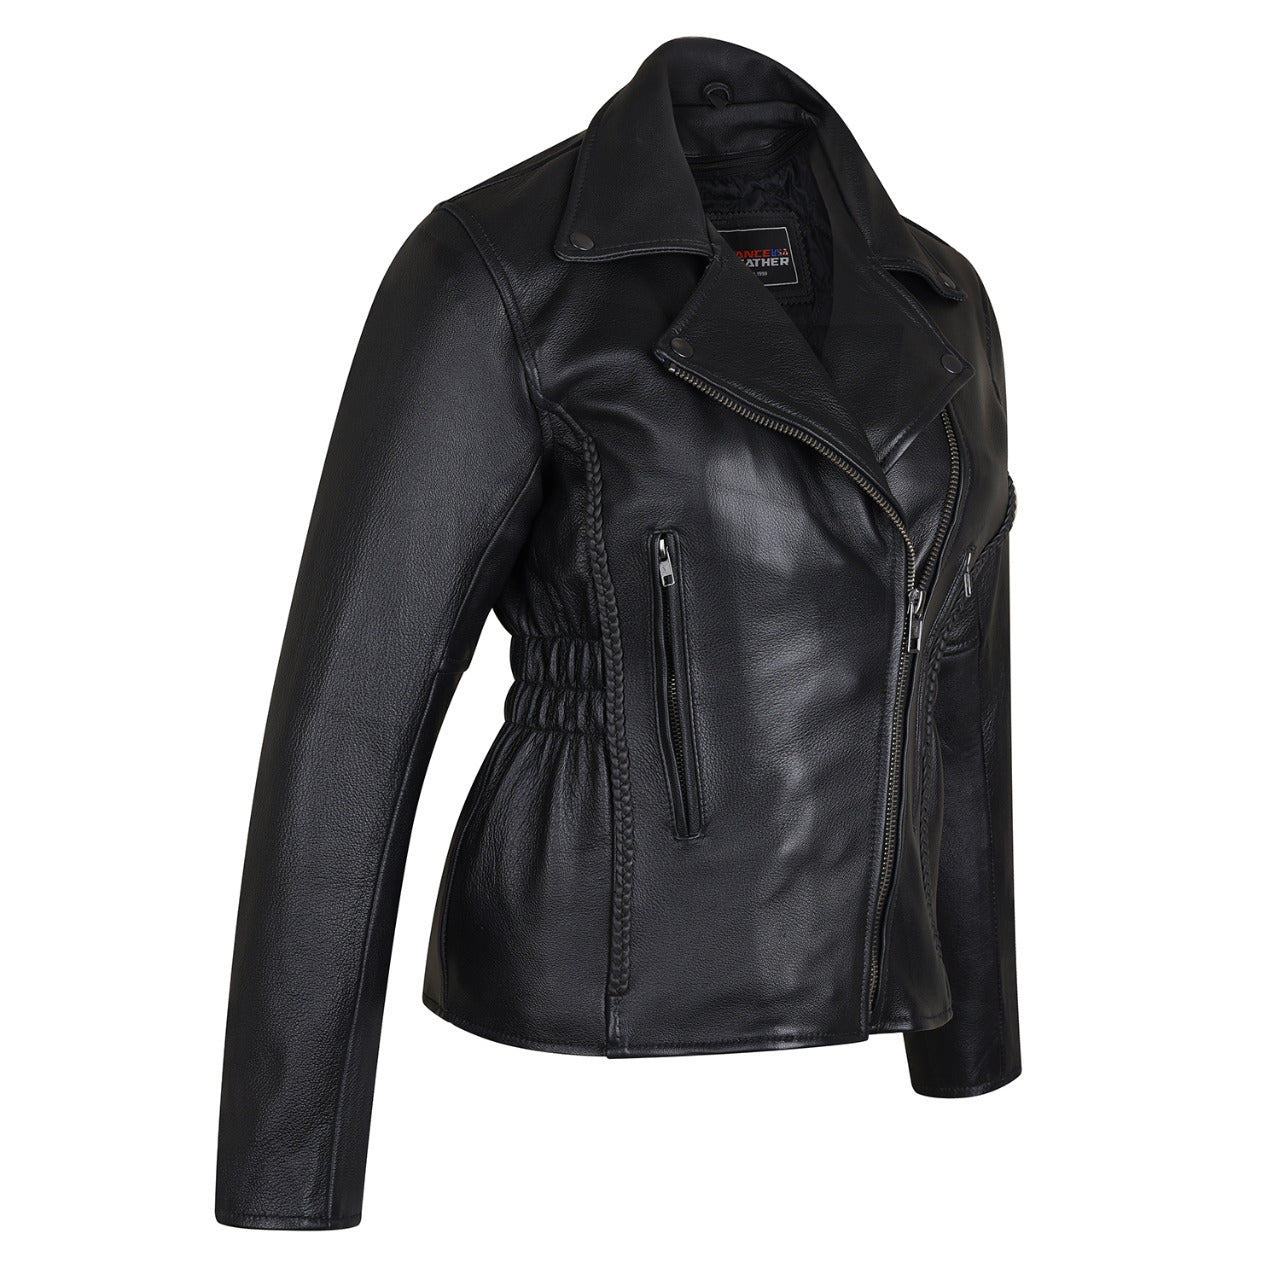 VL615 Vance Leather Ladies Premium Cowhide Braid and Stud Motorcycle L